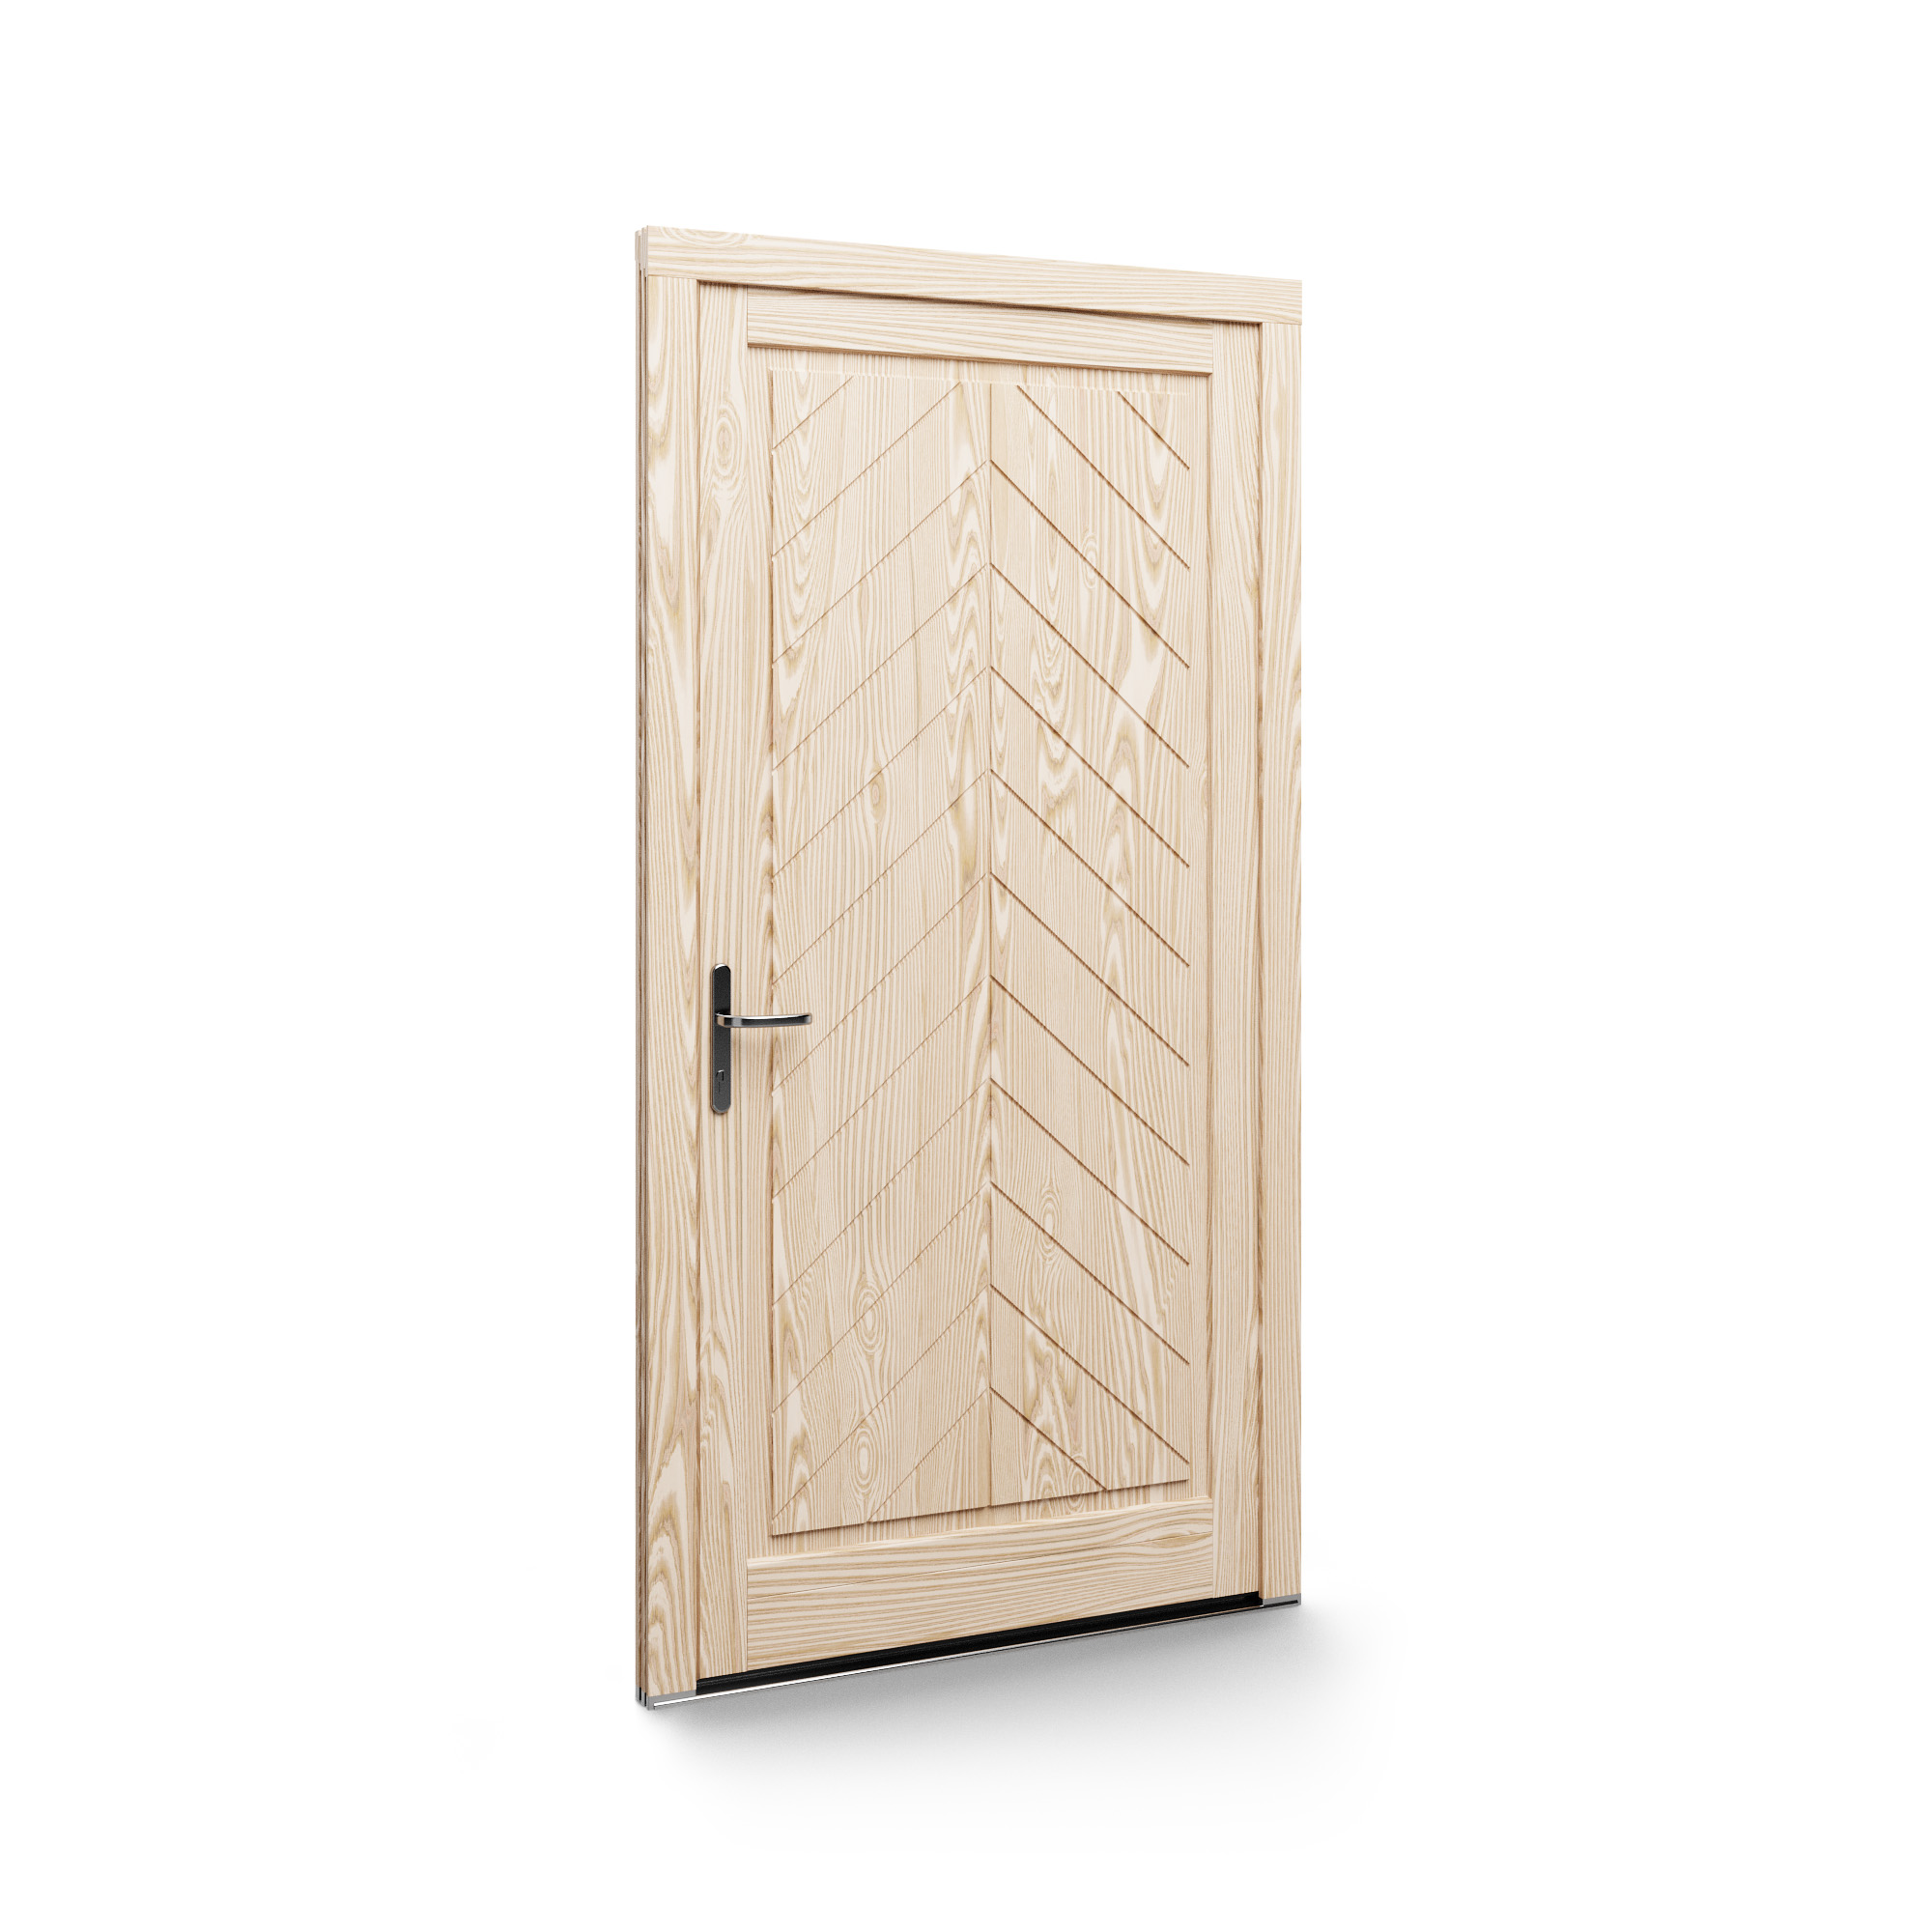 Porte in legno